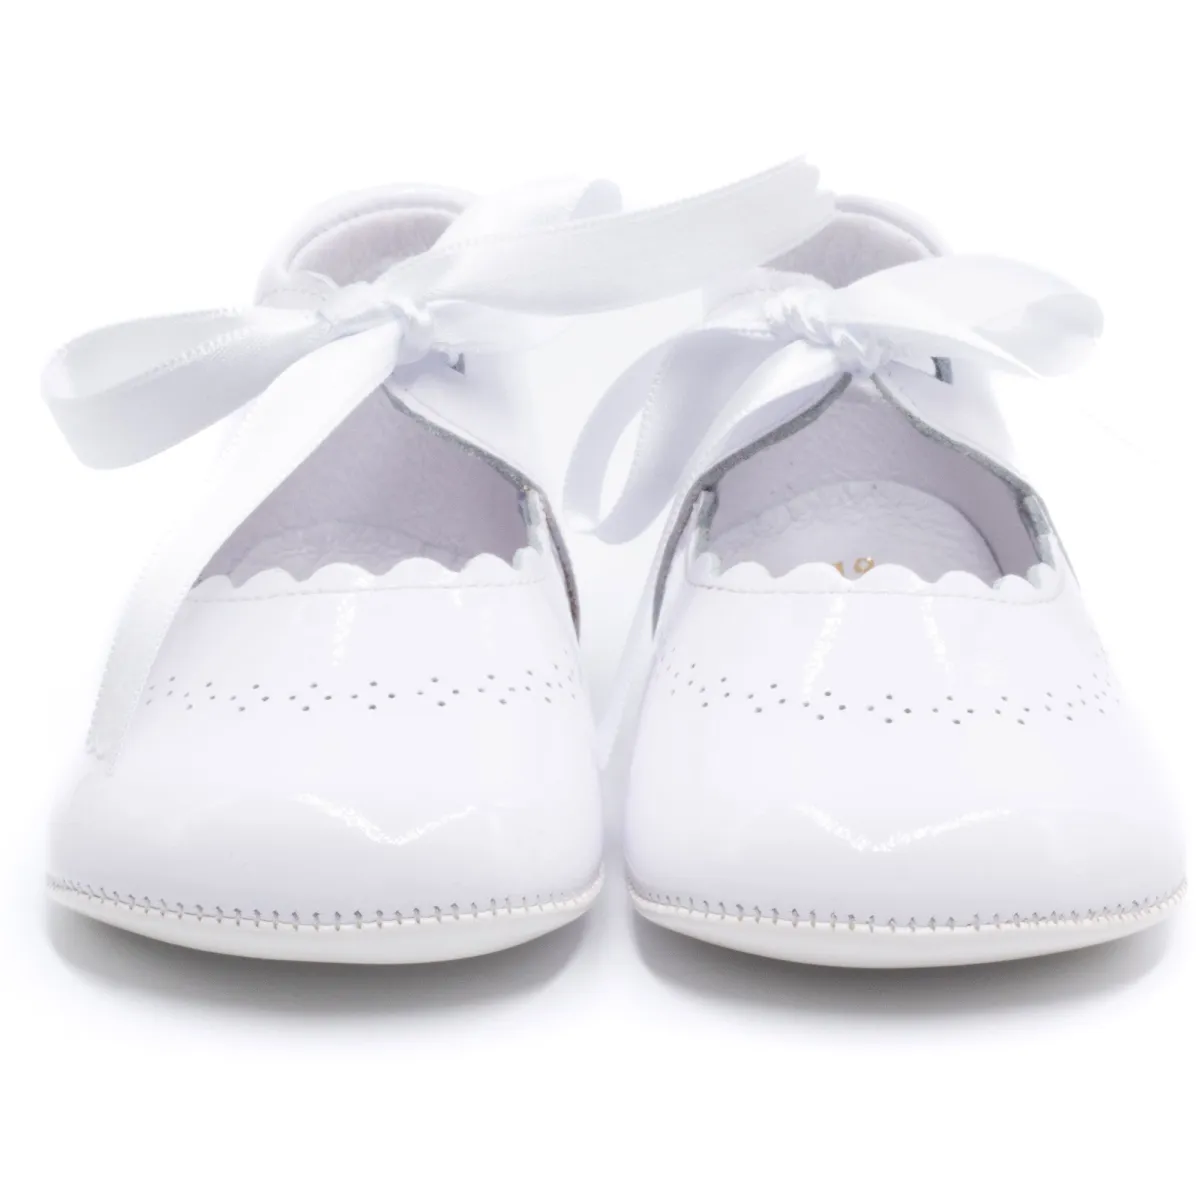 schoenen feestje - Boni Clémence - baby lederen meisje slipper - 